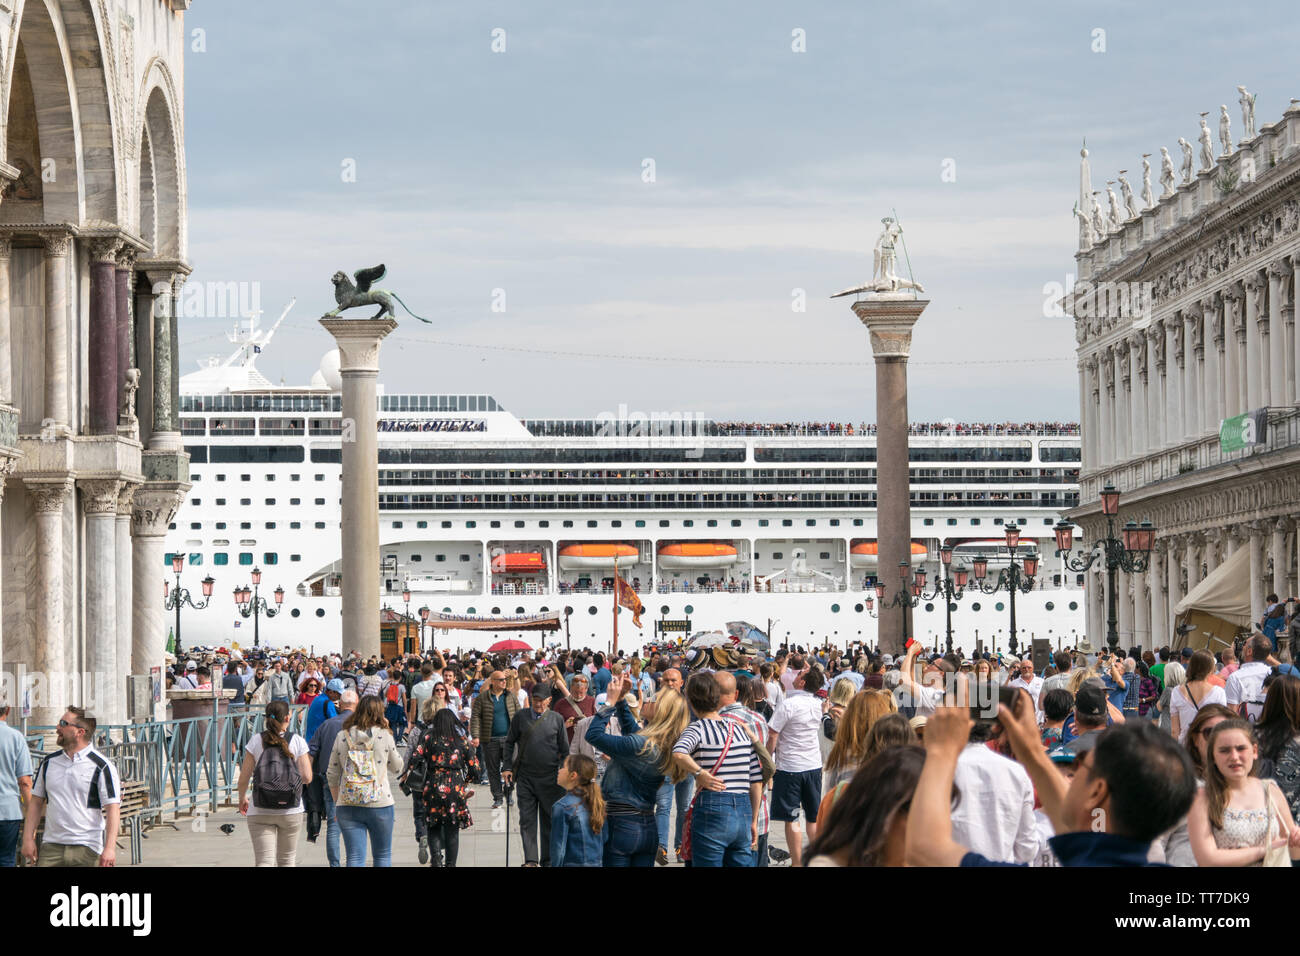 L'Europe, Italie, Venise - navire de croisière MSC Opera quitter Venise à Bacino San Marco quelques jours avant l'accident (26 mai 2019) Banque D'Images